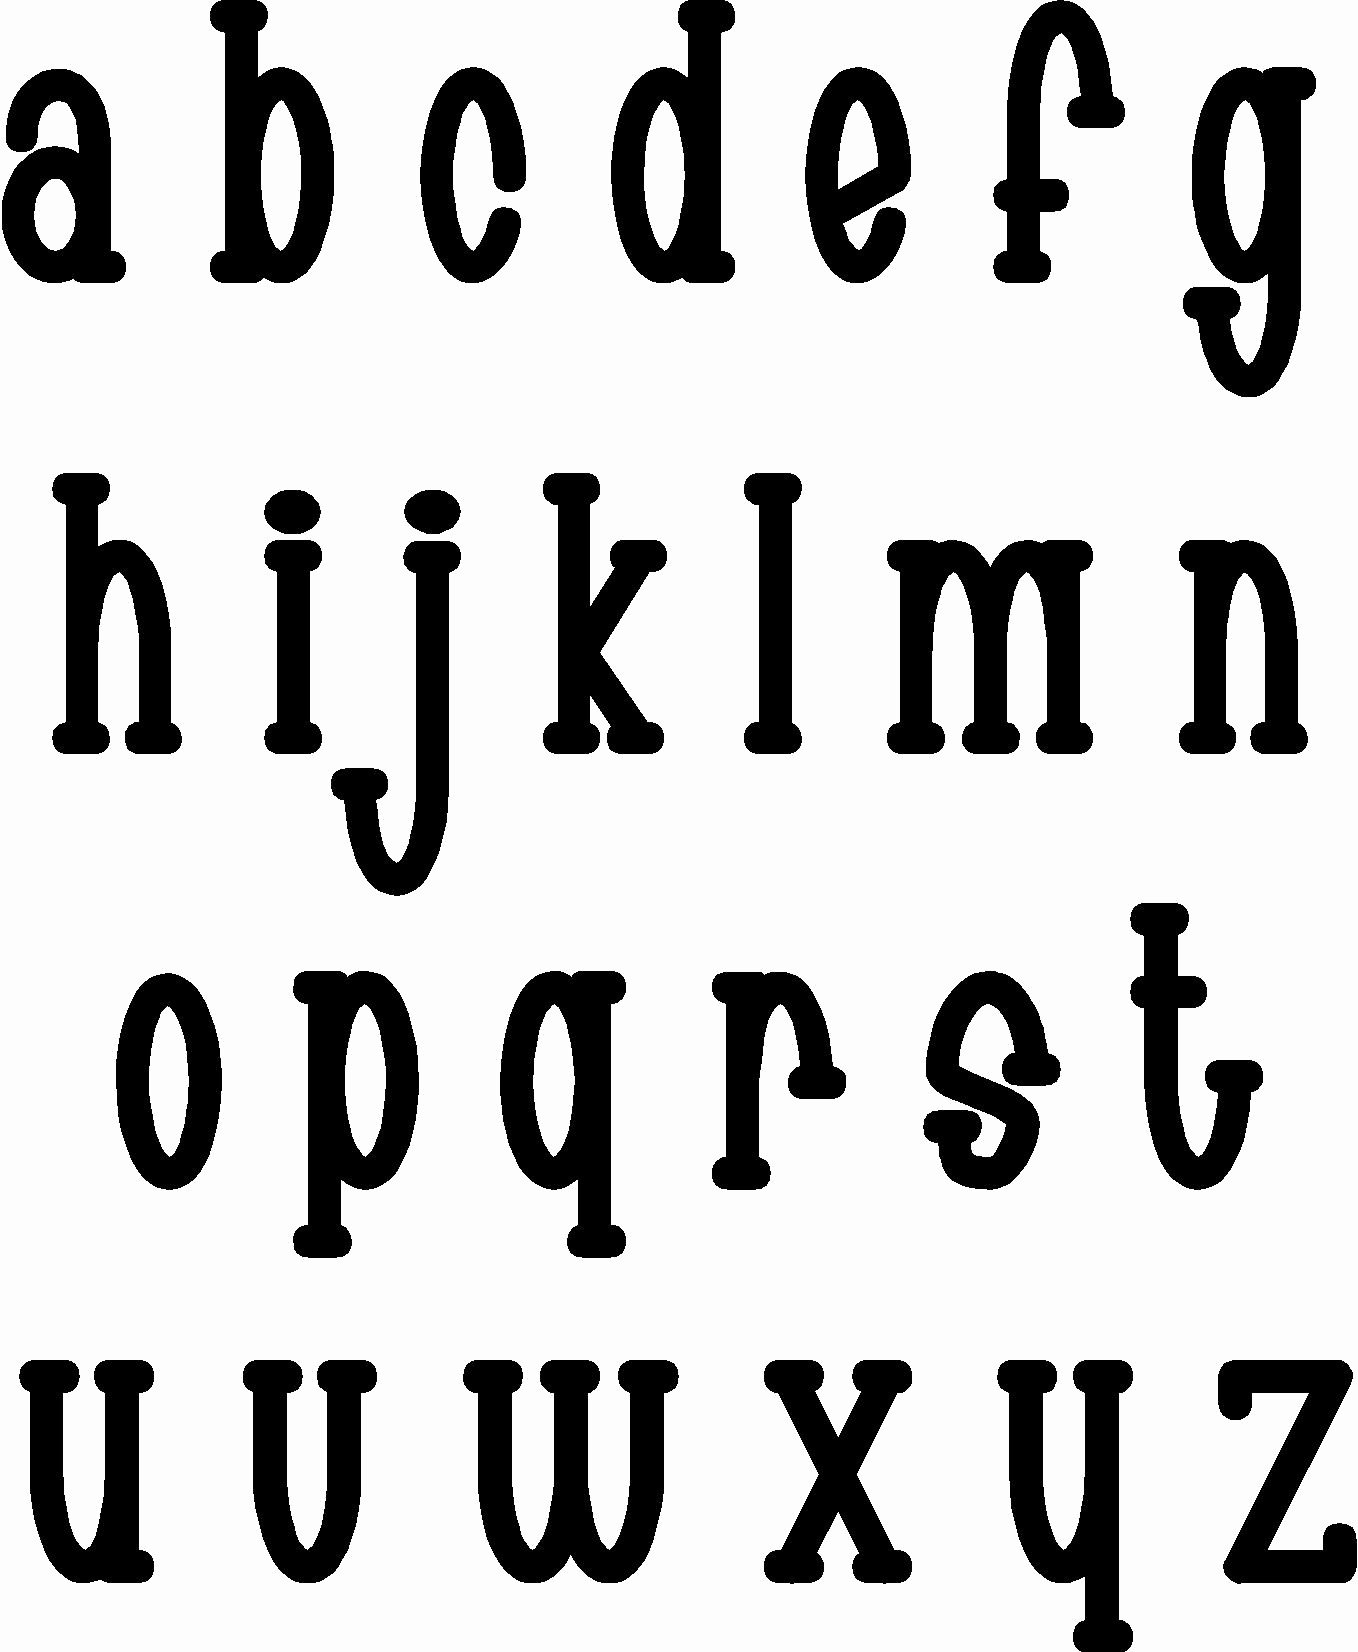 Free Printable Alphabet Stencils Unique Printable Letter Stencils